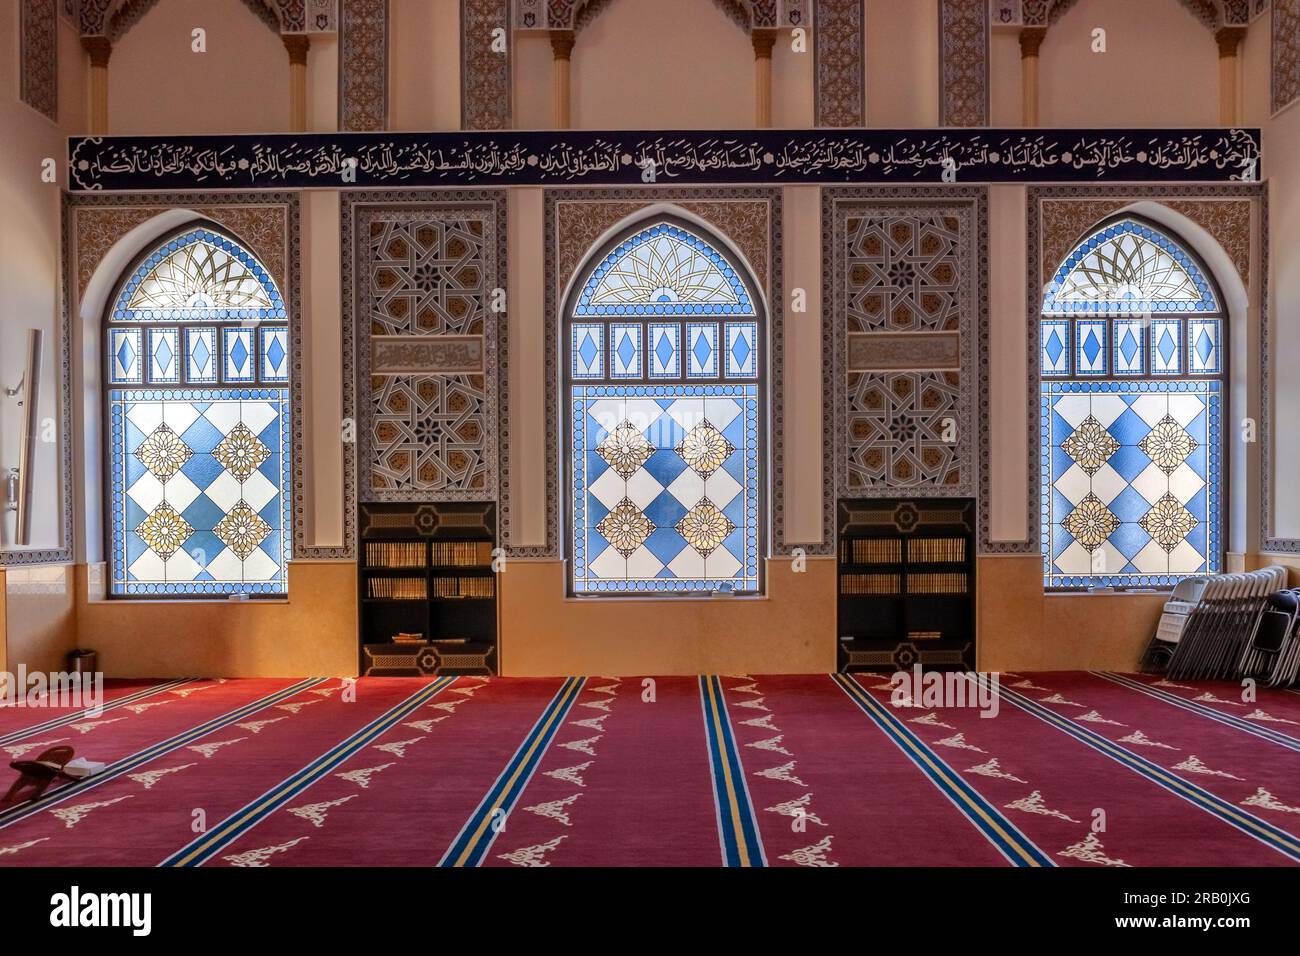 Beautiful interior decoration of Dubai mosque, UAE Stock Photo